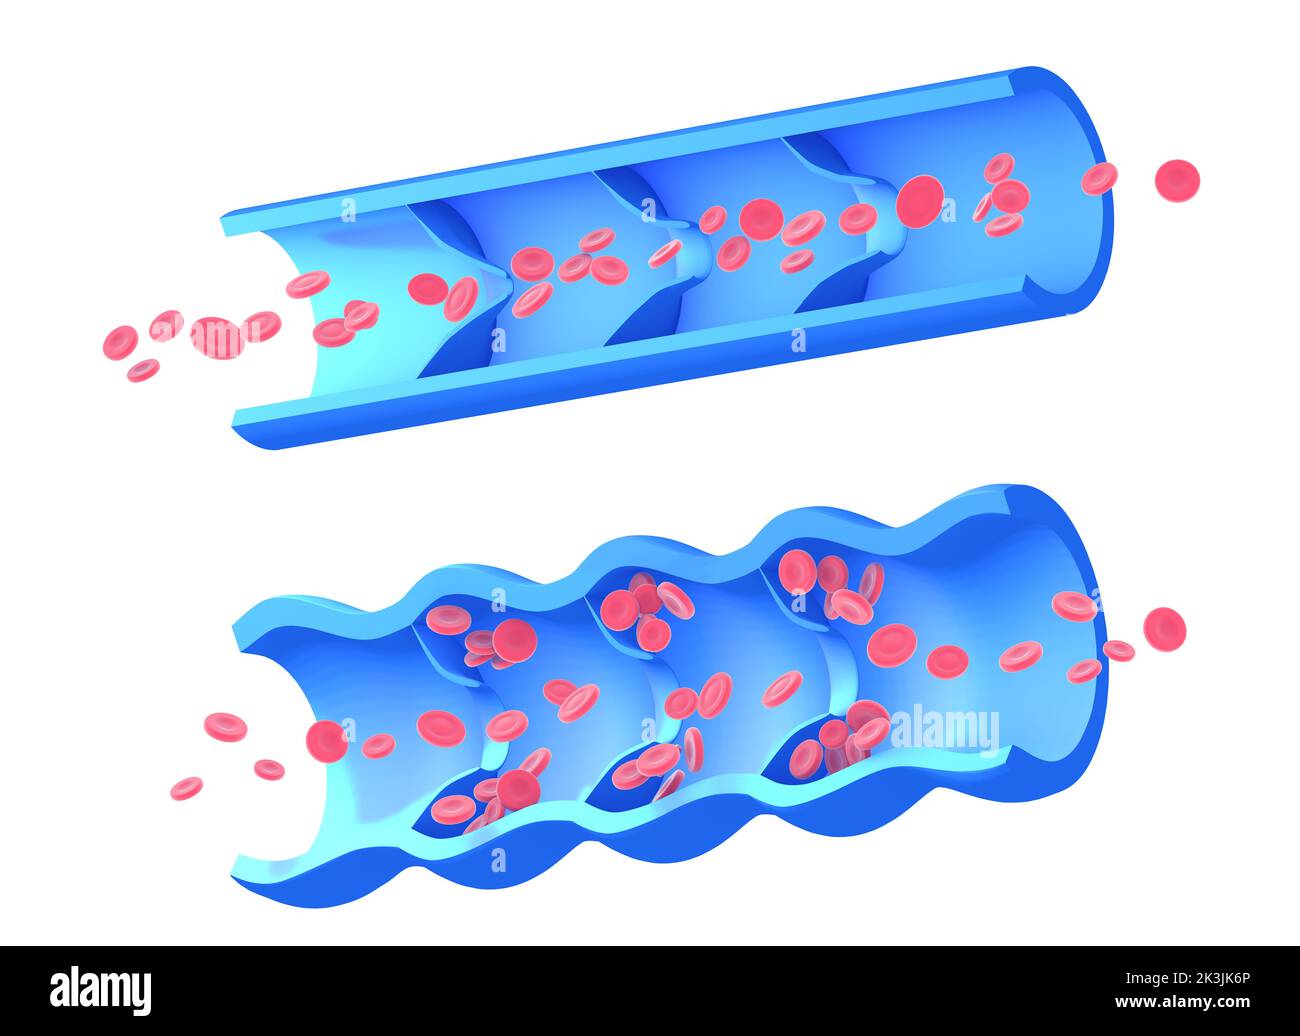 Anatomische 3D Abbildung von zwei Bildern, erkrankte inkompetente Vene und gesunde Vene. Grafische Darstellung des Blutkreislaufs. Stockfoto